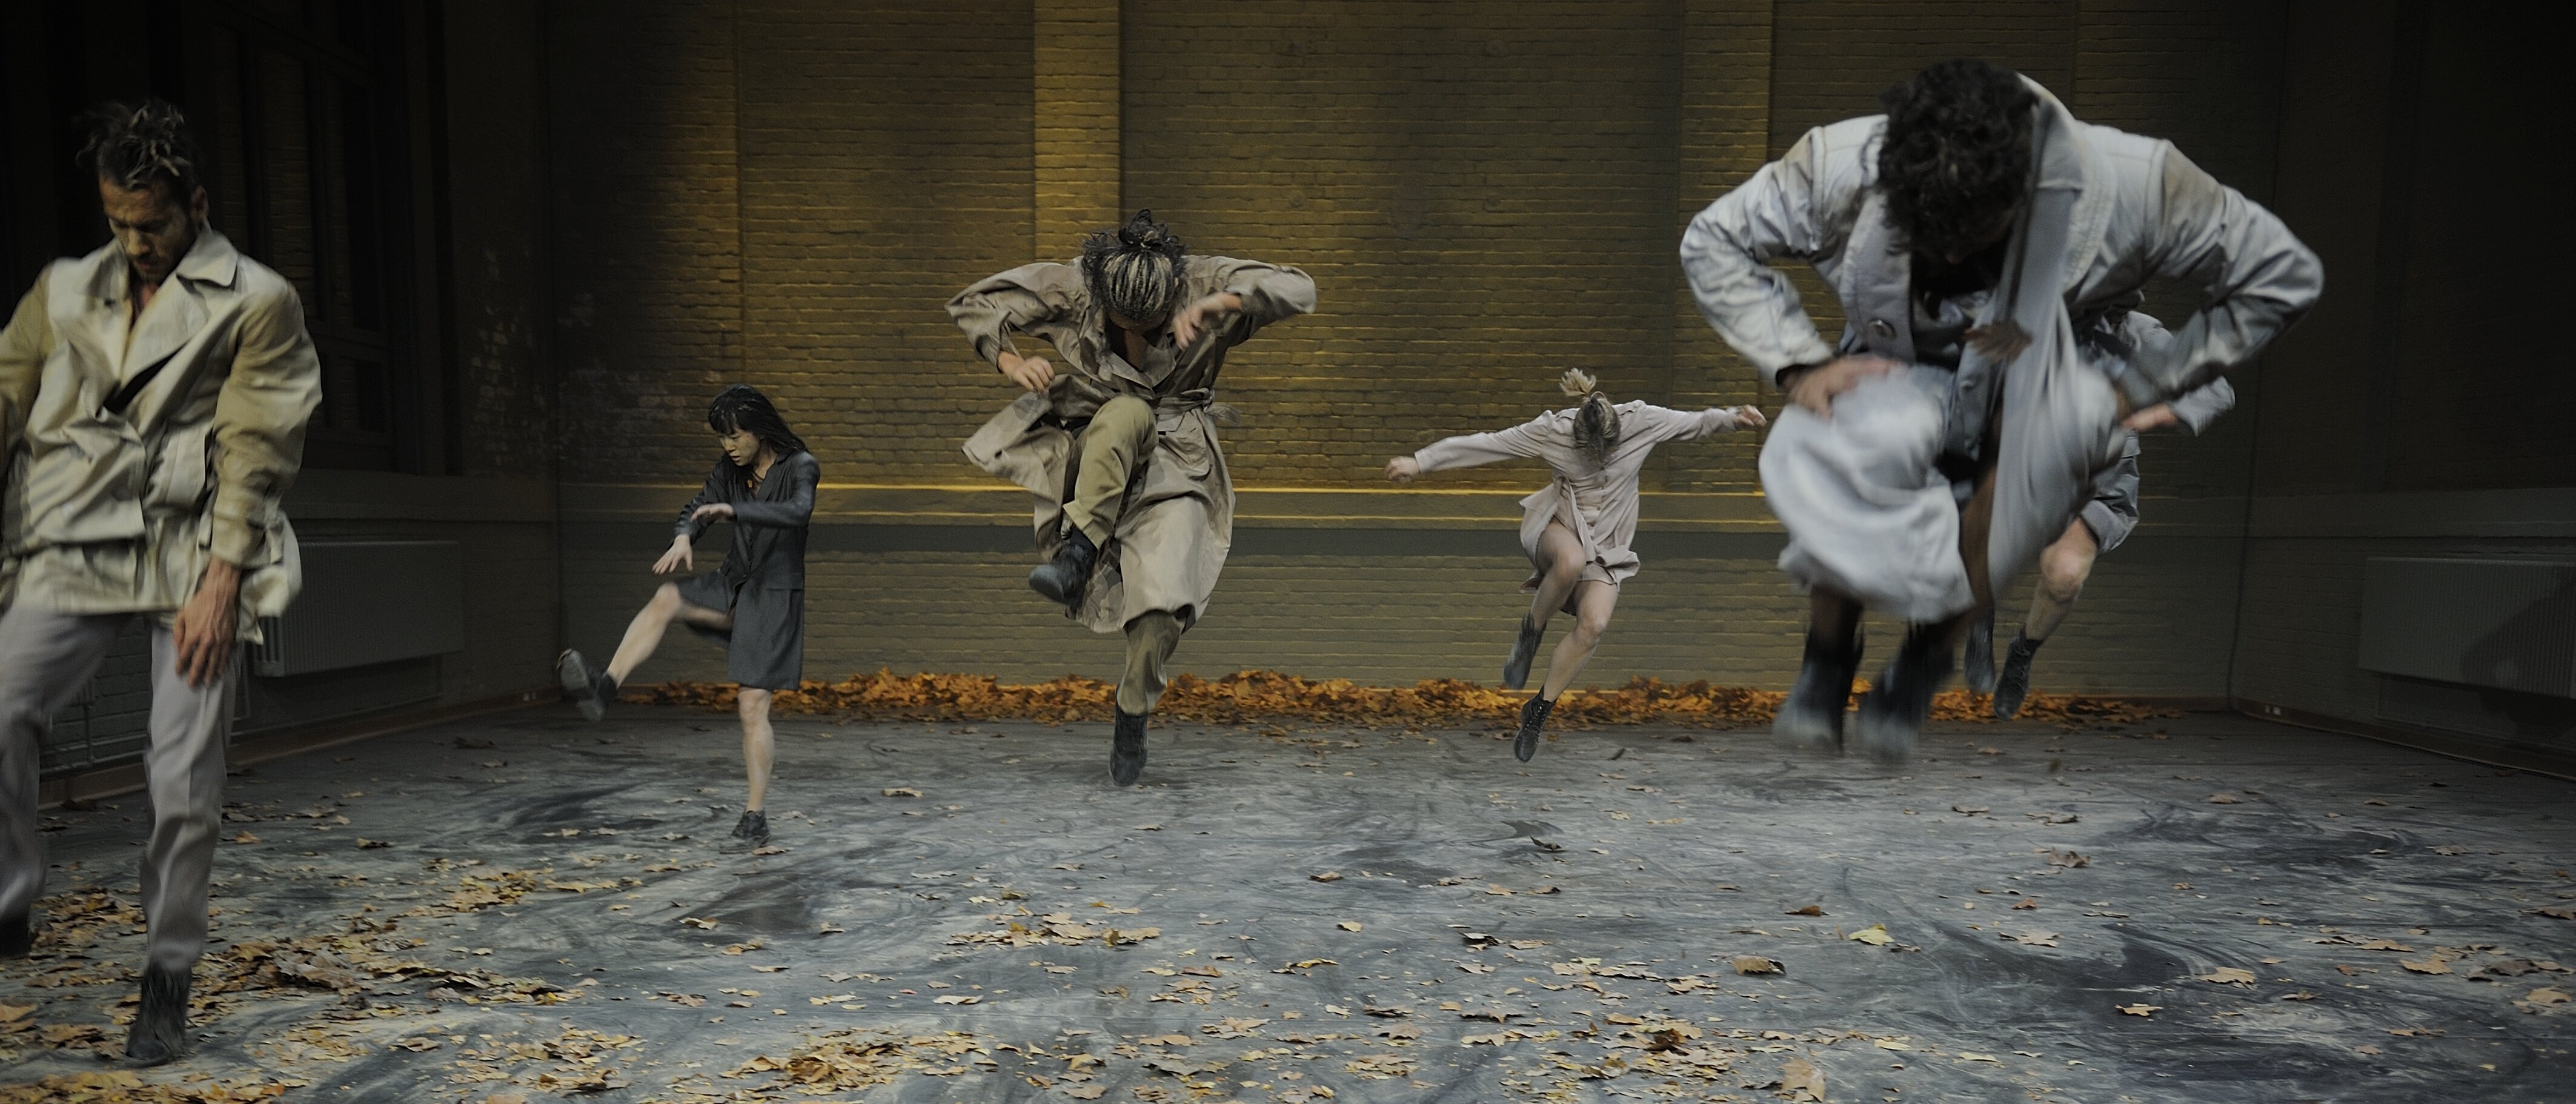 Szene aus einem Tanztheaterstück. Fotografiert wurden sechs Personen im Sprung